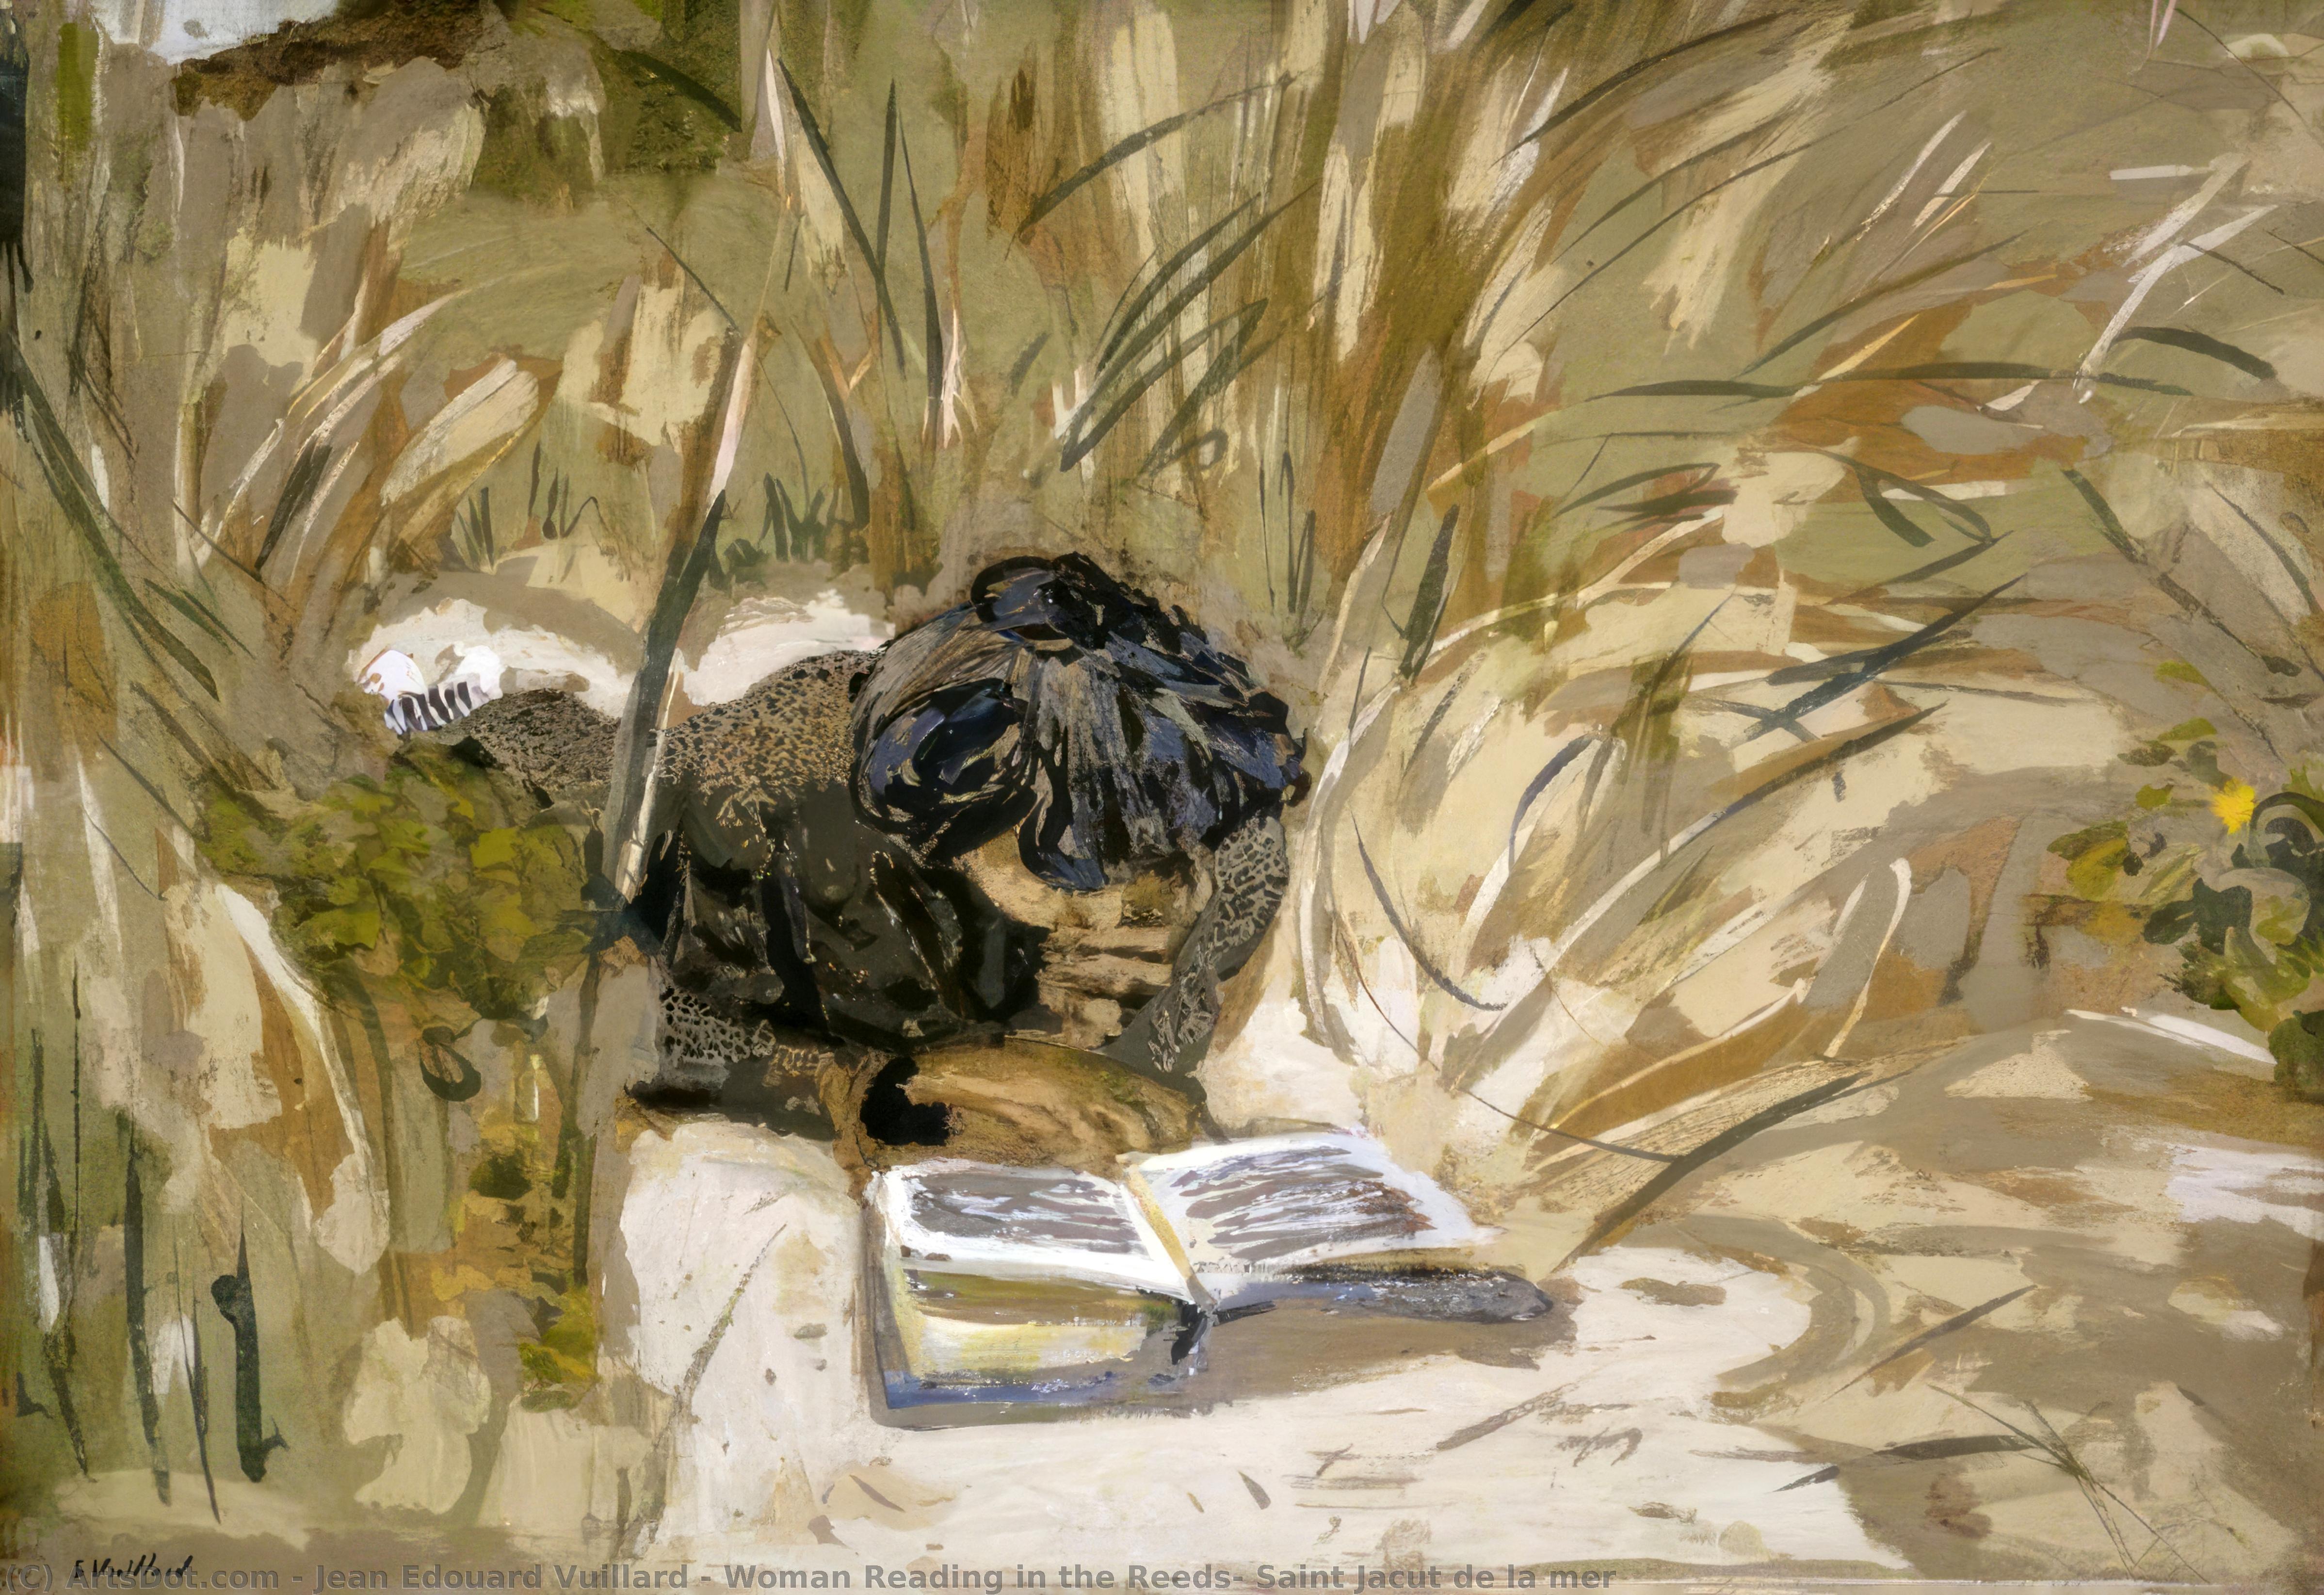 WikiOO.org - Encyclopedia of Fine Arts - Målning, konstverk Jean Edouard Vuillard - Woman Reading in the Reeds, Saint Jacut de la mer